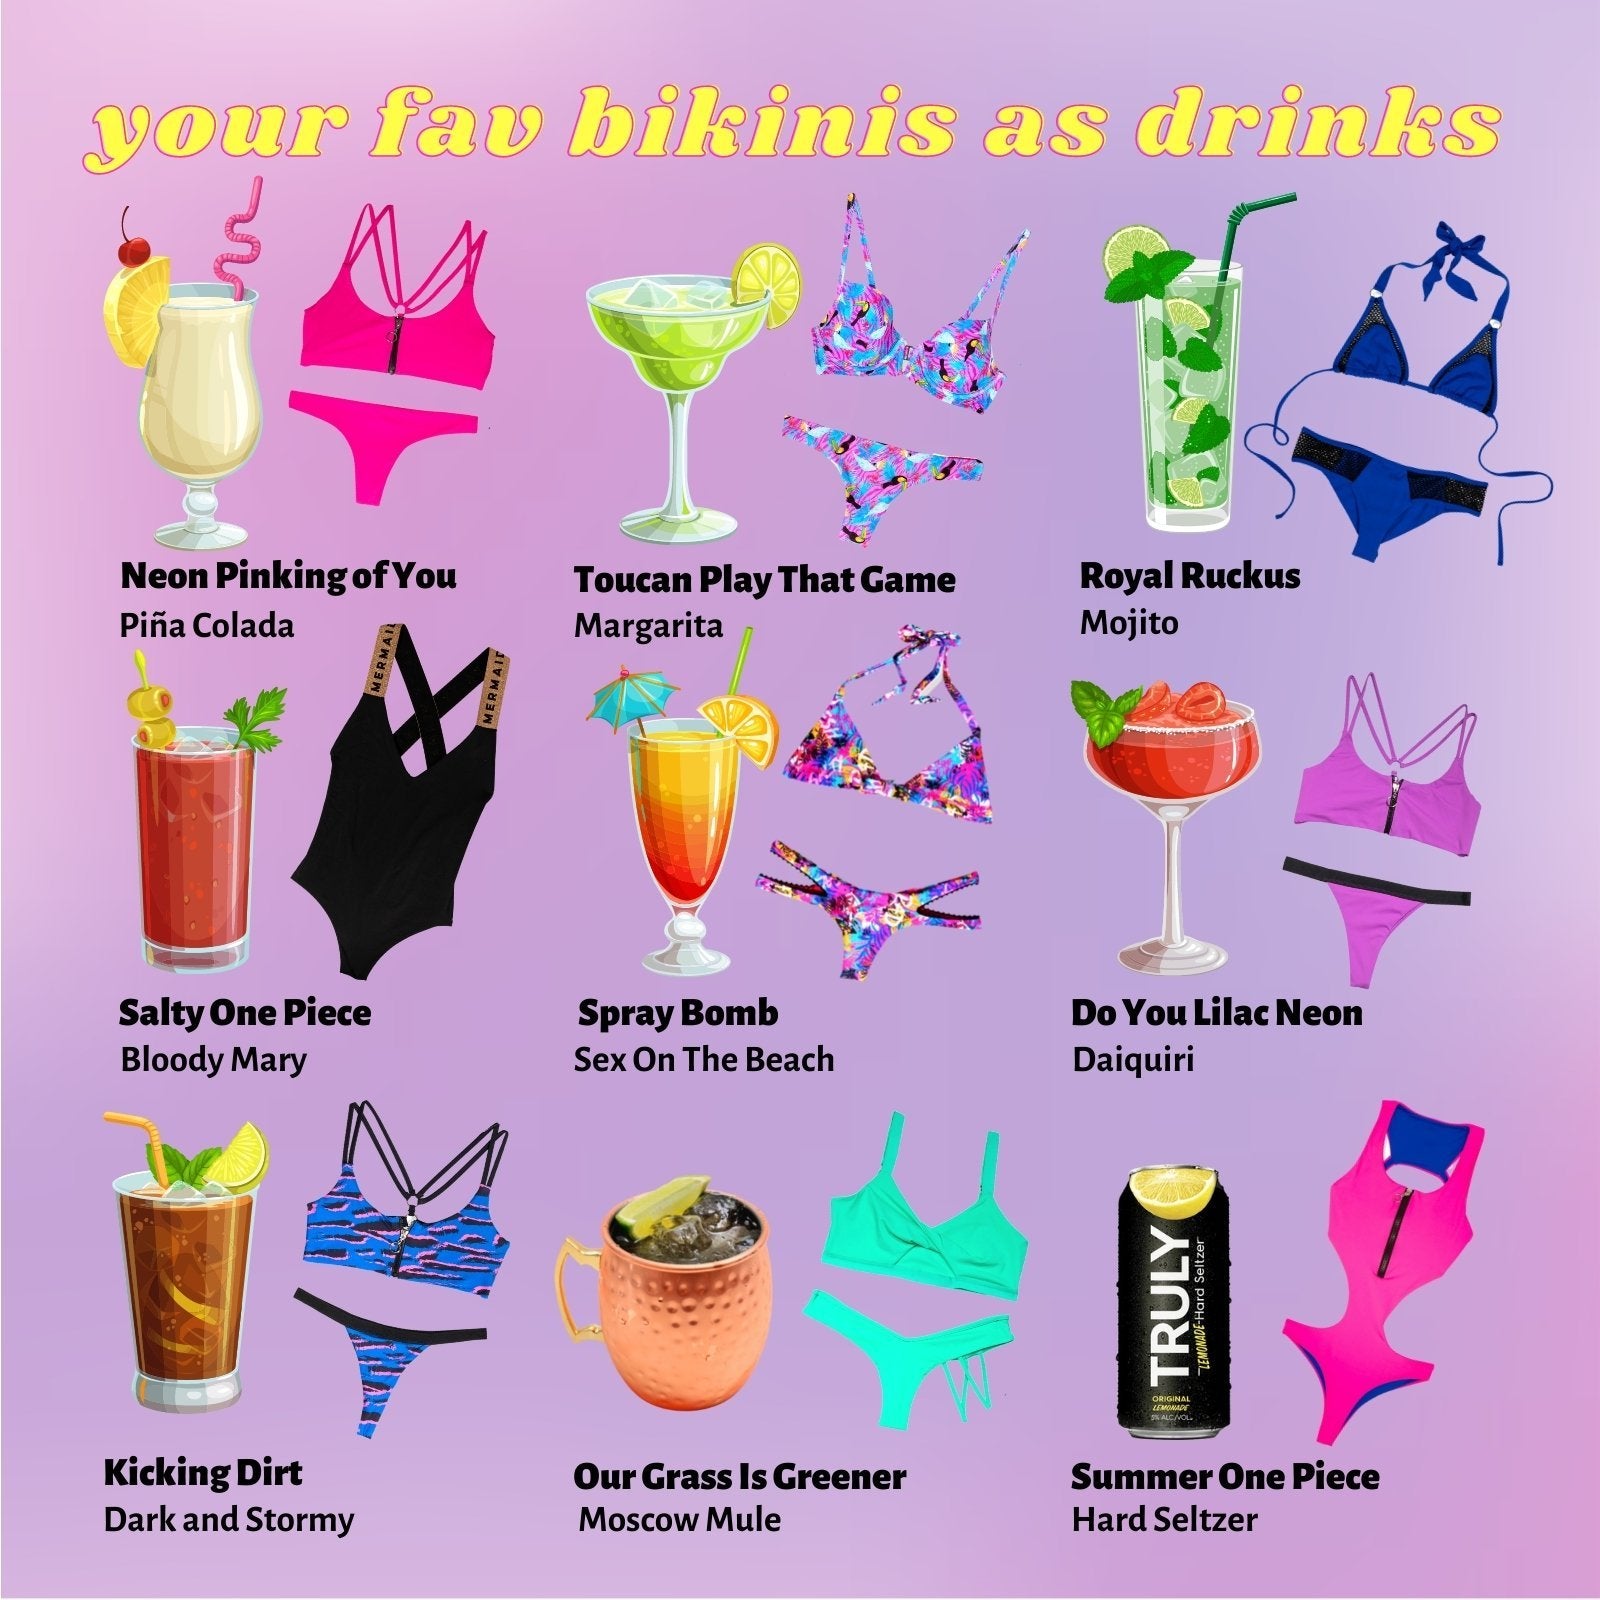 YOUR FAVORITE BIKINIS AS DRINKS